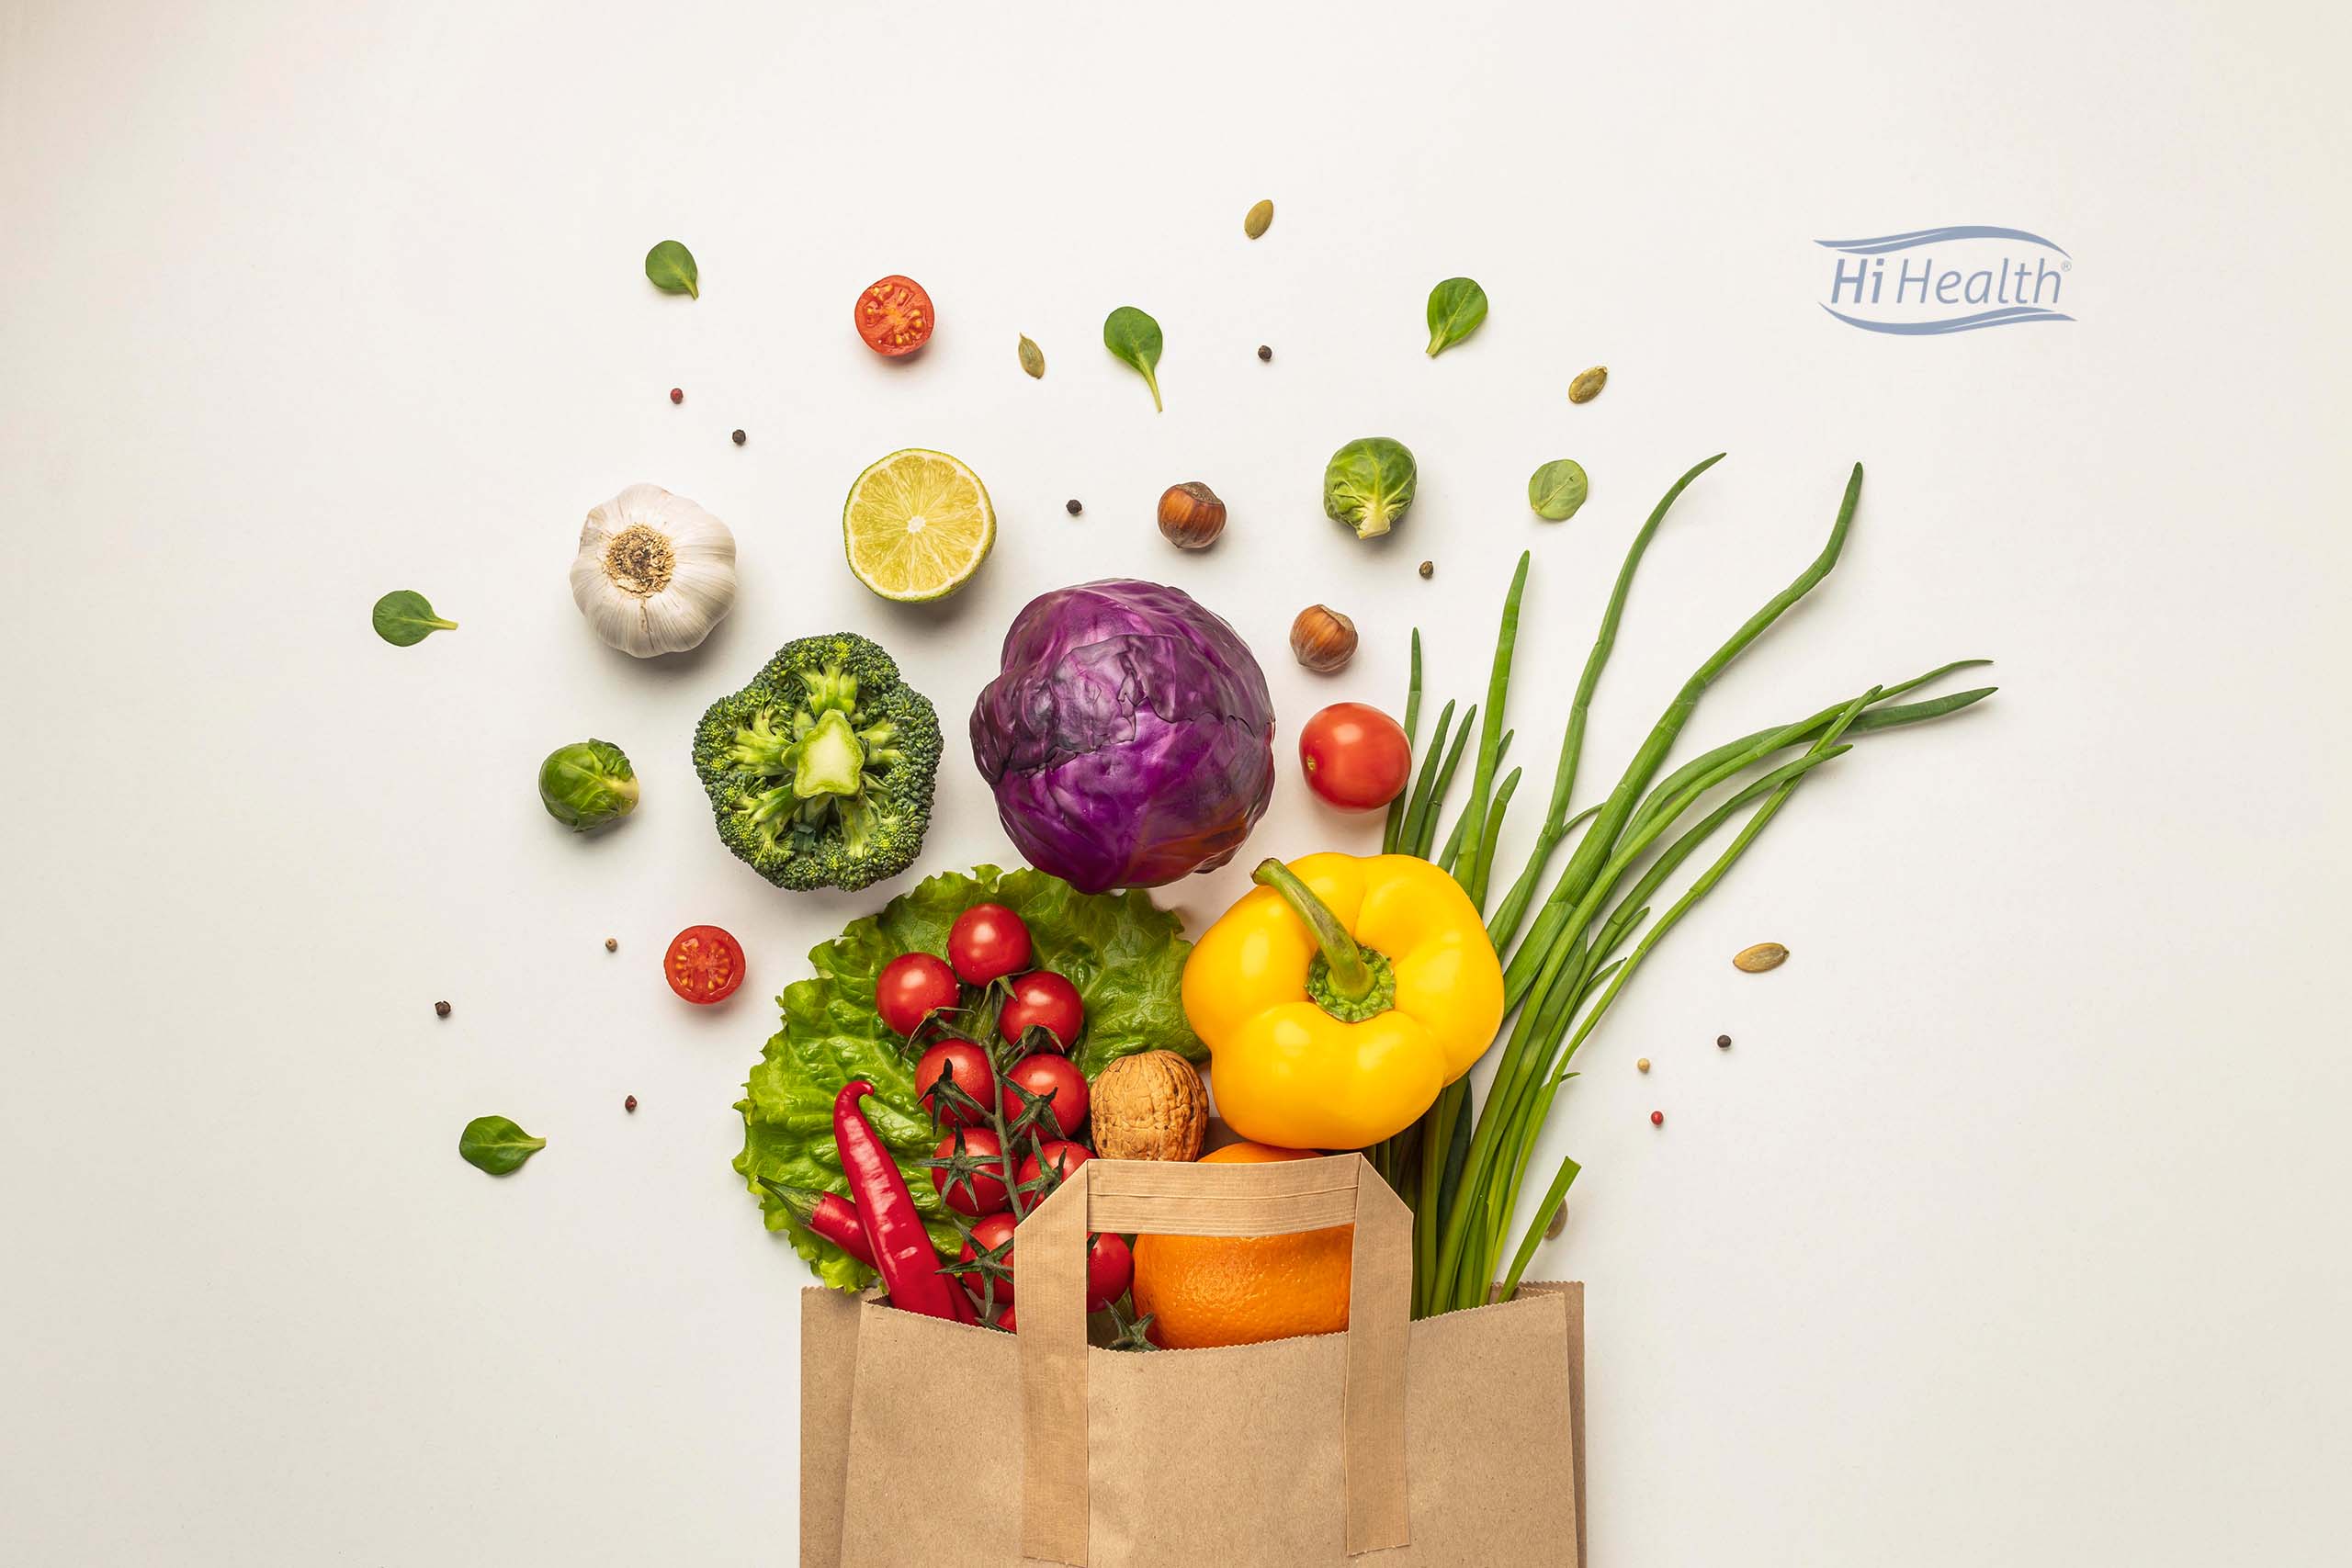 مزیت های گیاه خواری | مزایای گیاه خواری | گیاهخواری | رژیم گیاهخواری